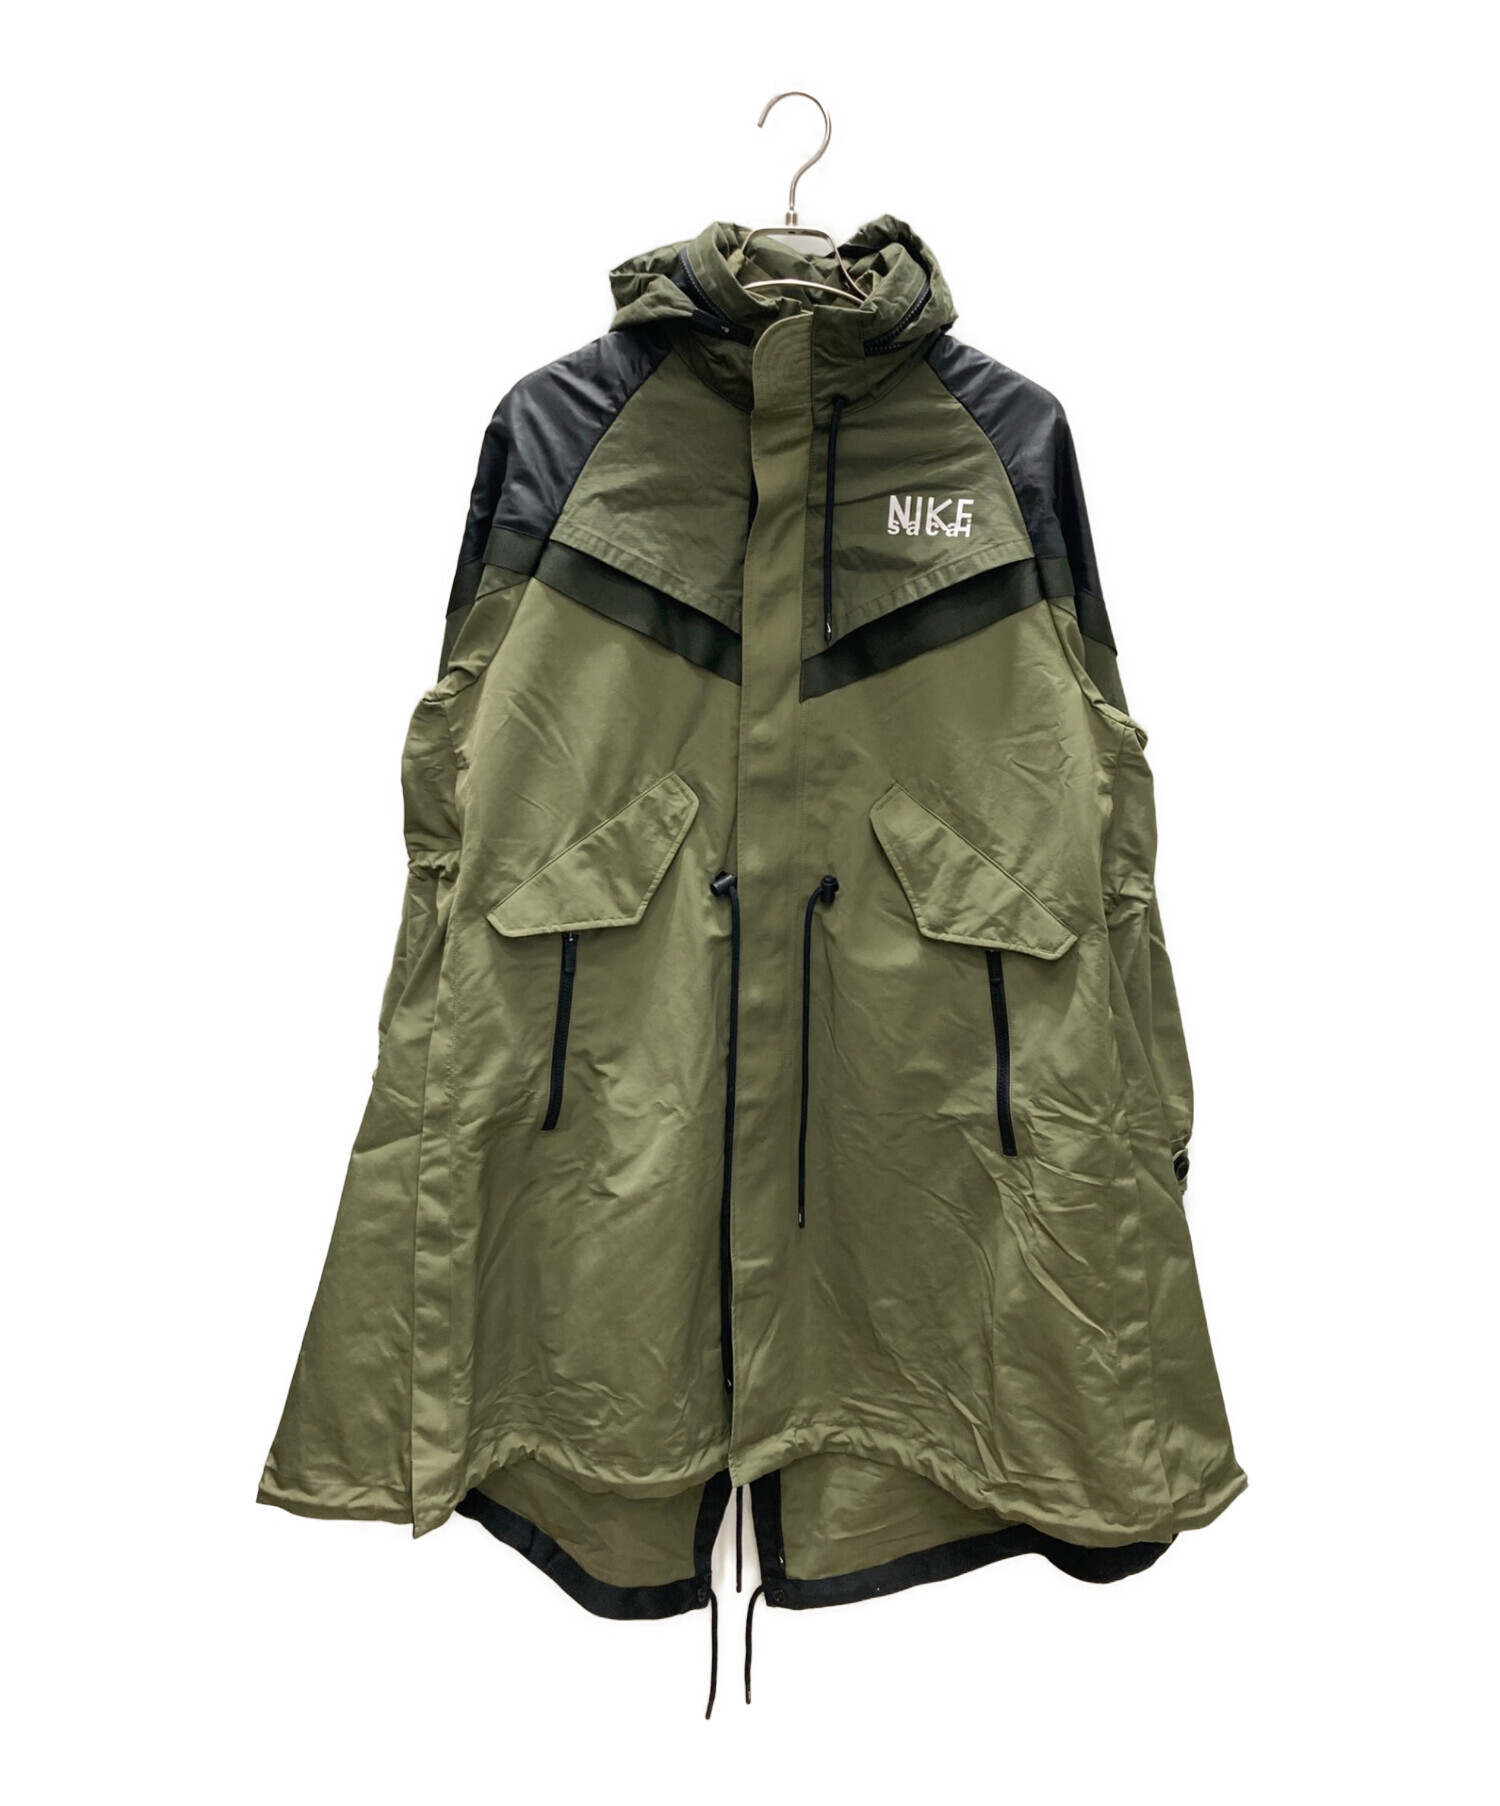 NIKE (ナイキ) sacai (サカイ) トレンチジャケット オリーブ サイズ:S 未使用品